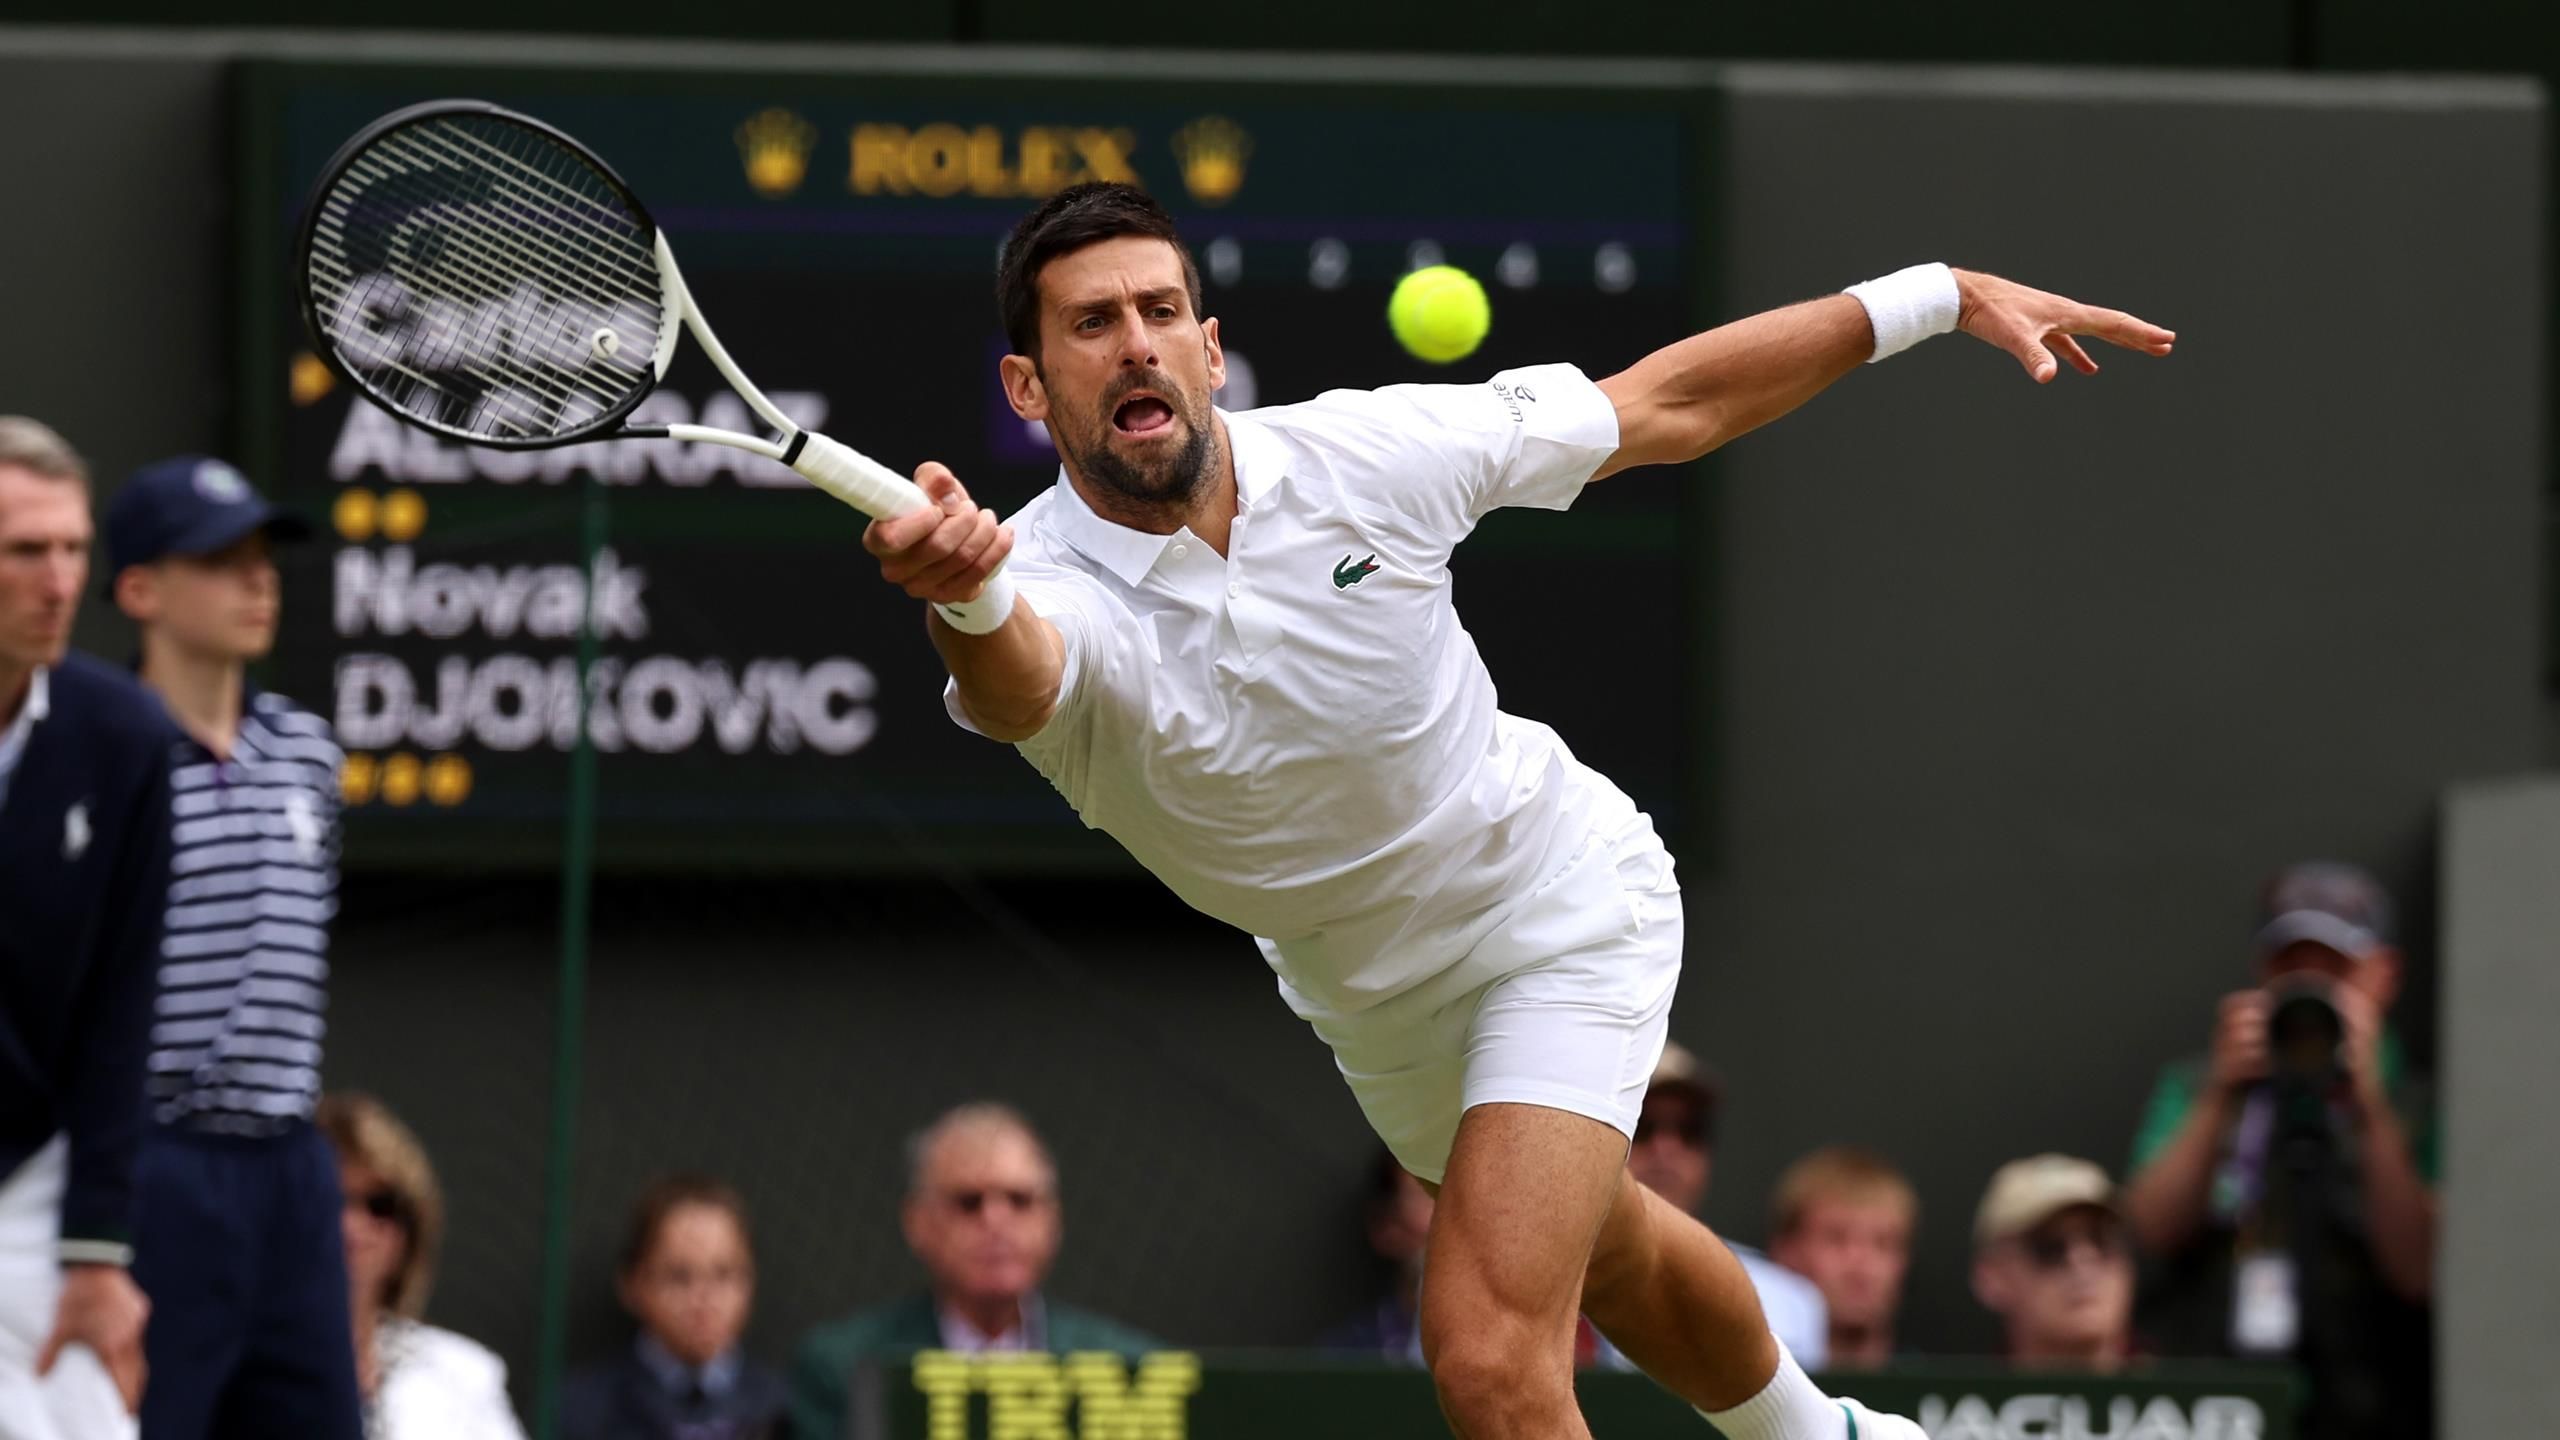 Übertragung Carlos Alcaraz - Novak Djokovic live im TV, Stream und Ticker - so lief das Finale von Wimbledon